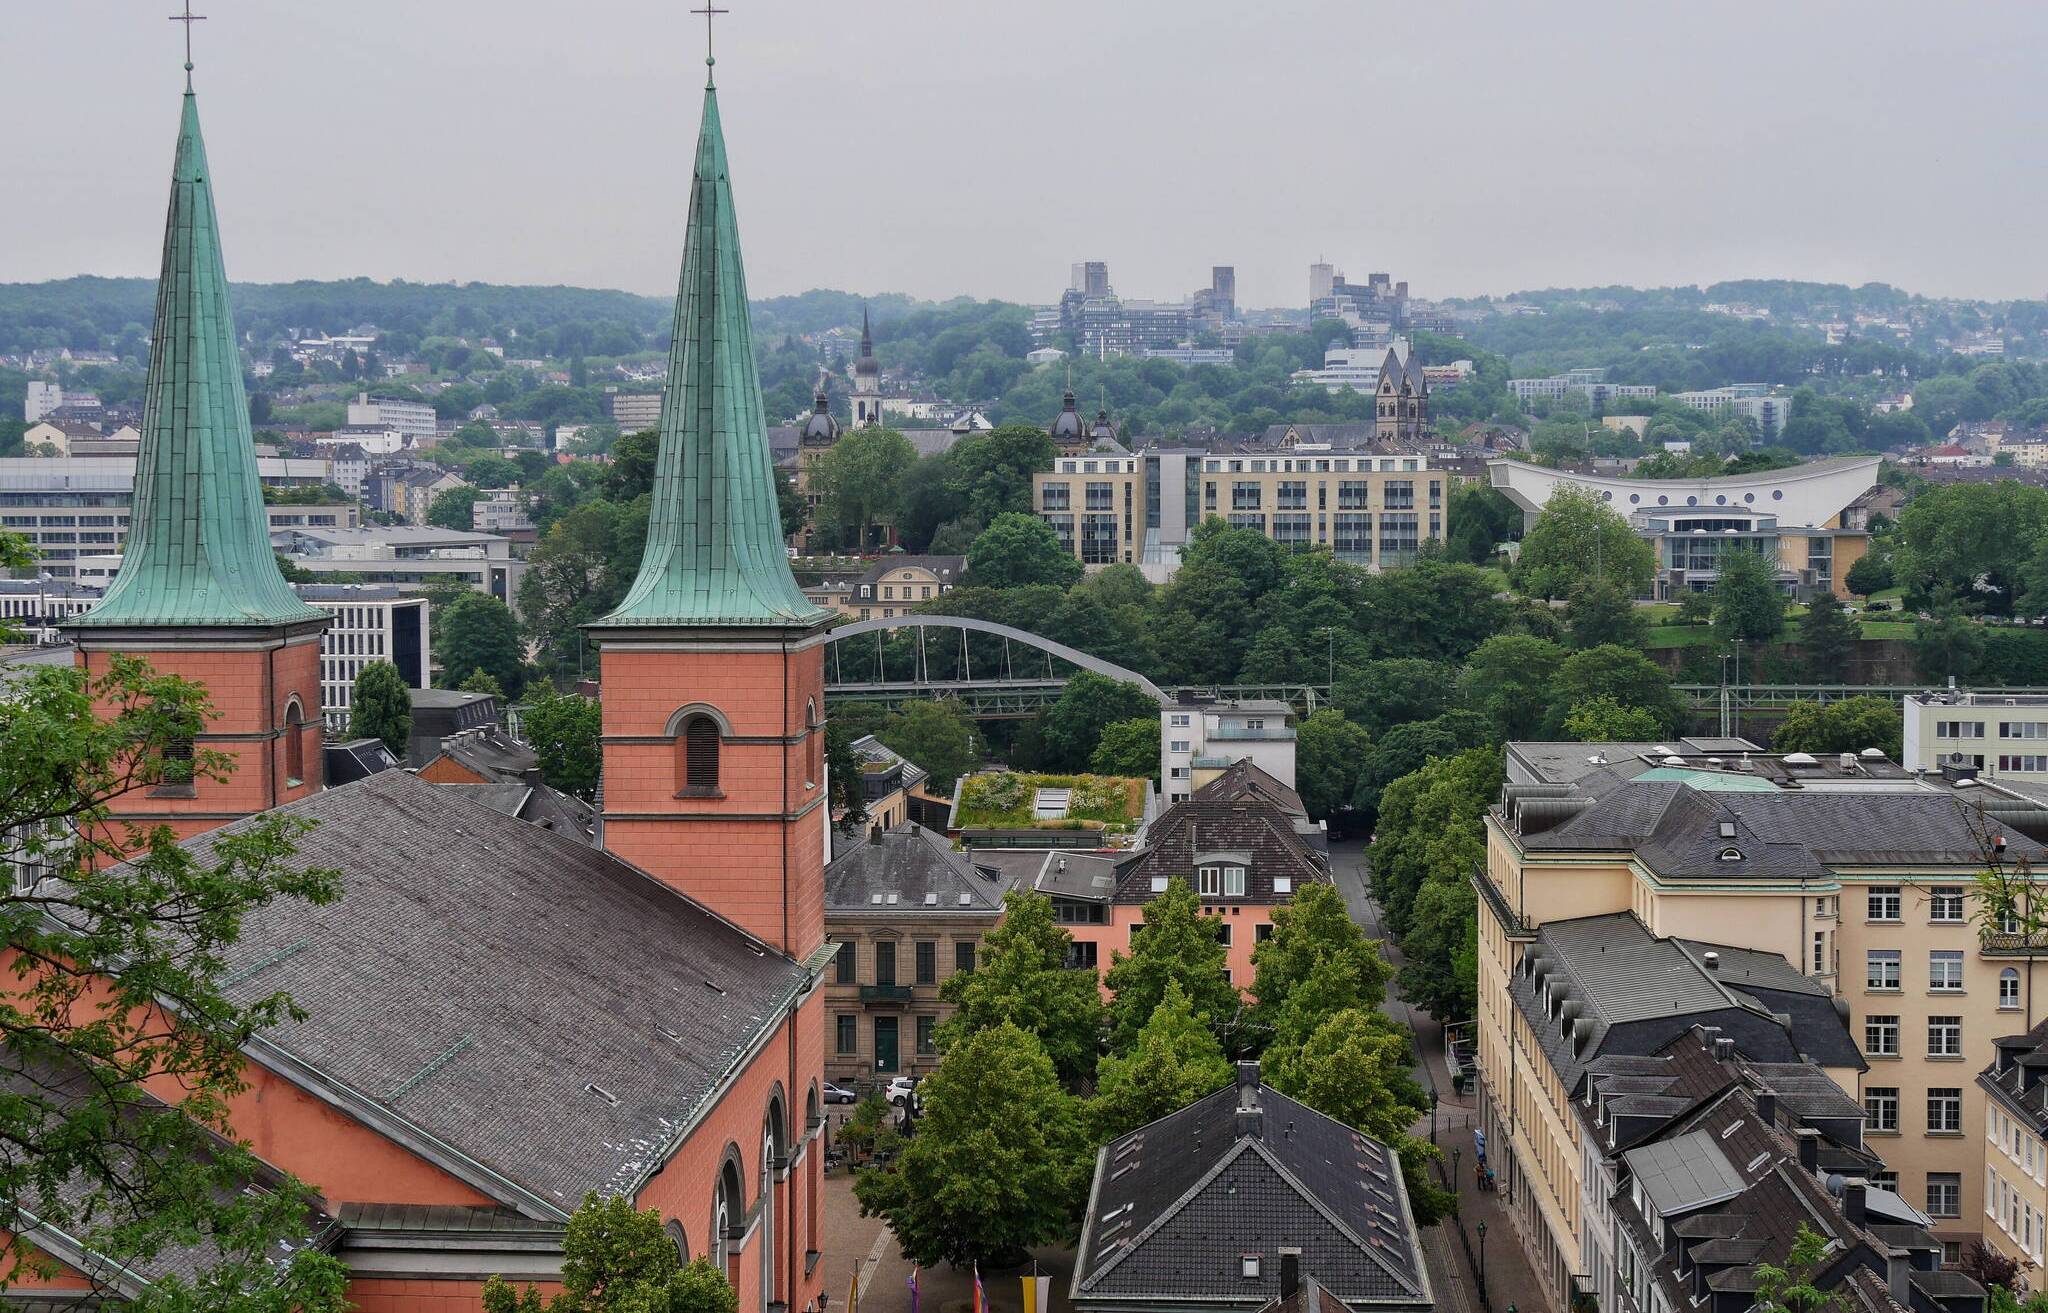  in Wuppertal – links die Basilika minor St. Laurentius in Elberfeld – regt sich schon länger Protest gegen die Führungsebene im Kölner Erzbistum. 